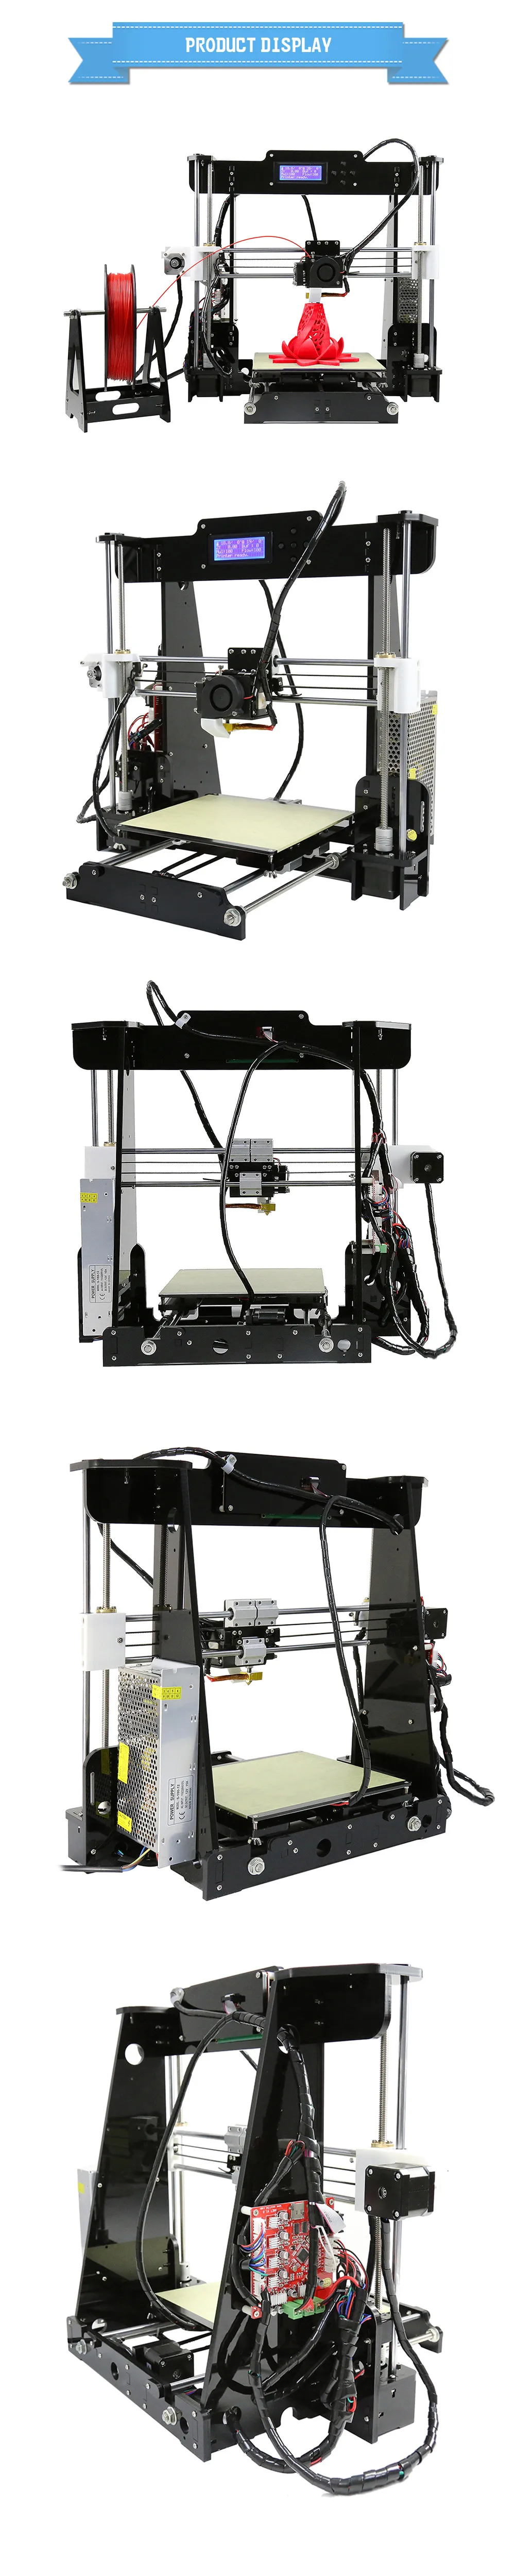 Высокая точность рабочего стола Prusa i3 DIY 3D принтеры ЖК-экран для самостоятельной сборки USB/sd-карты дешевые Anet 3D принтеры в евро/США склад